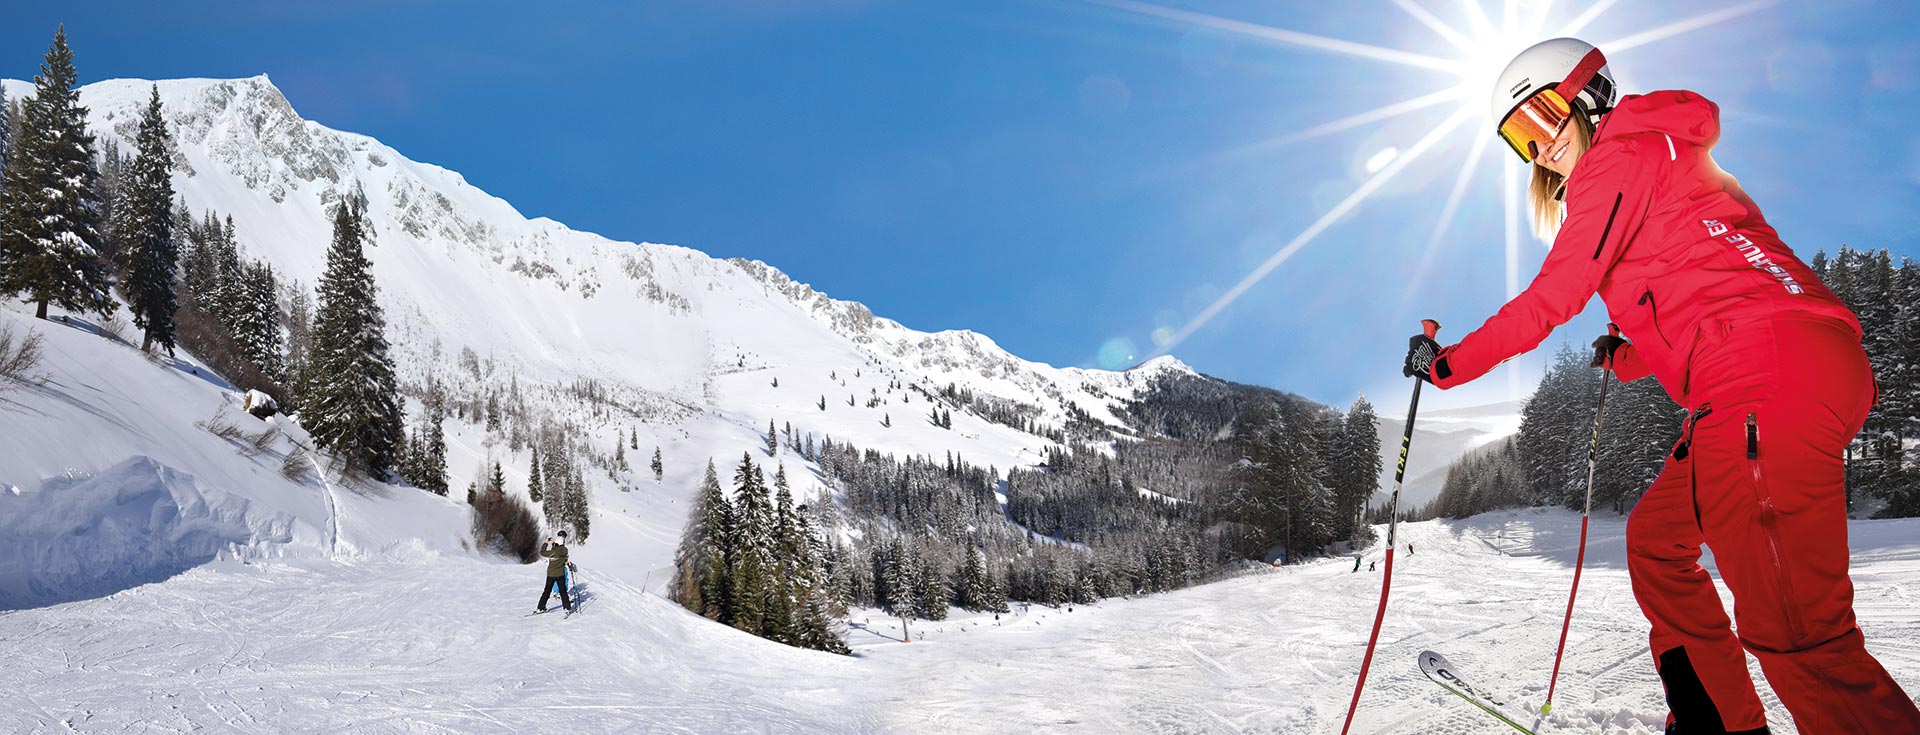 DANKE!<br />
Für euren Besuch in der Wintersaison 2021/2022. <br /> Wir freuen uns auf die kommende Skisaison mit neuer Tagesgastronomie!